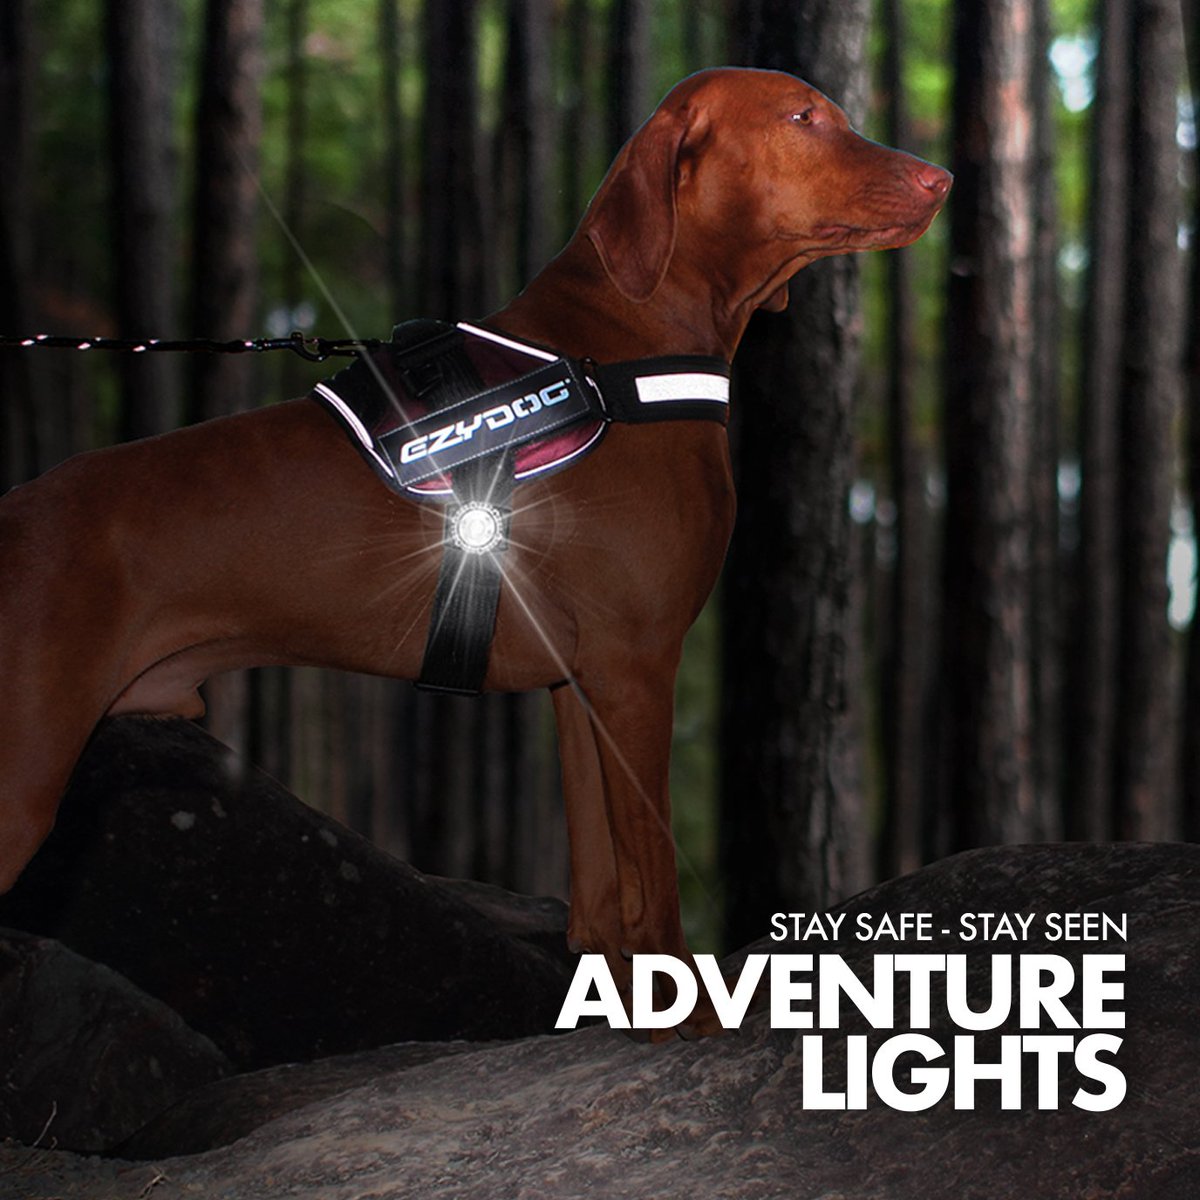 Adventure Lights Safety Lighting